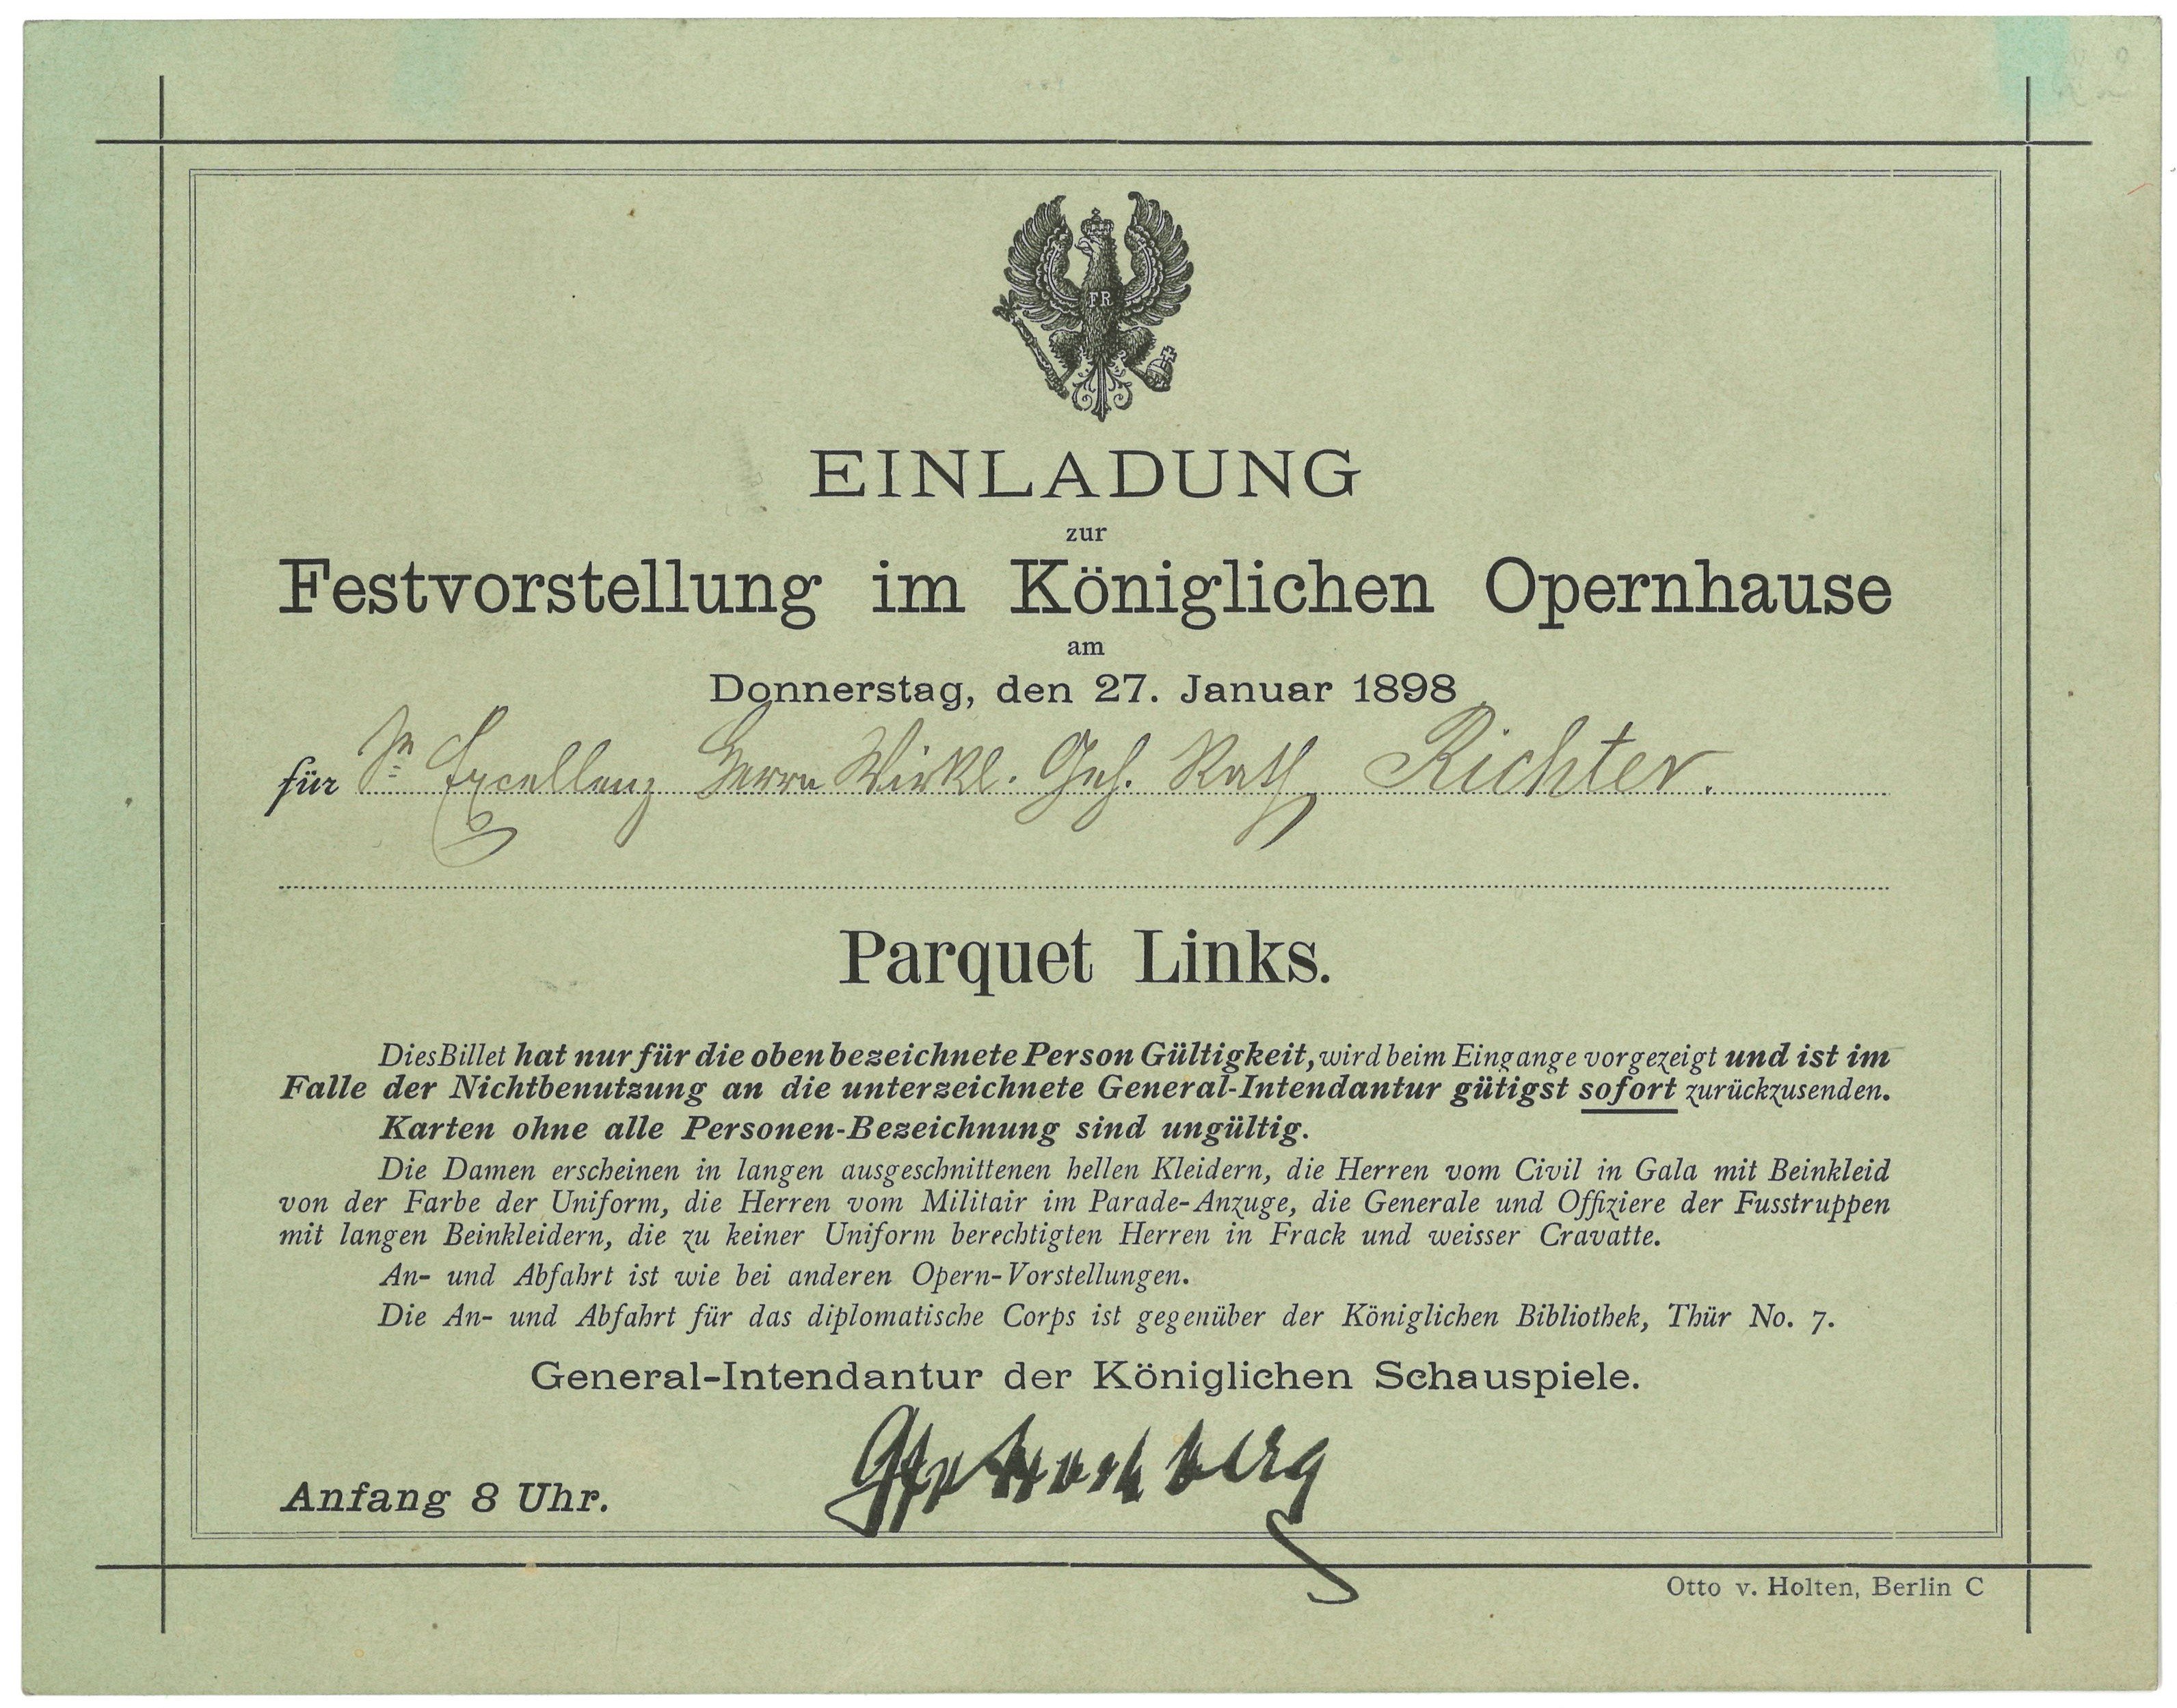 Einladung zur Festvorstellung im Königlichen Opernhaus in Berlin am 27. Januar 1898 für Constantin Richter (Landesgeschichtliche Vereinigung für die Mark Brandenburg e.V., Archiv CC BY)